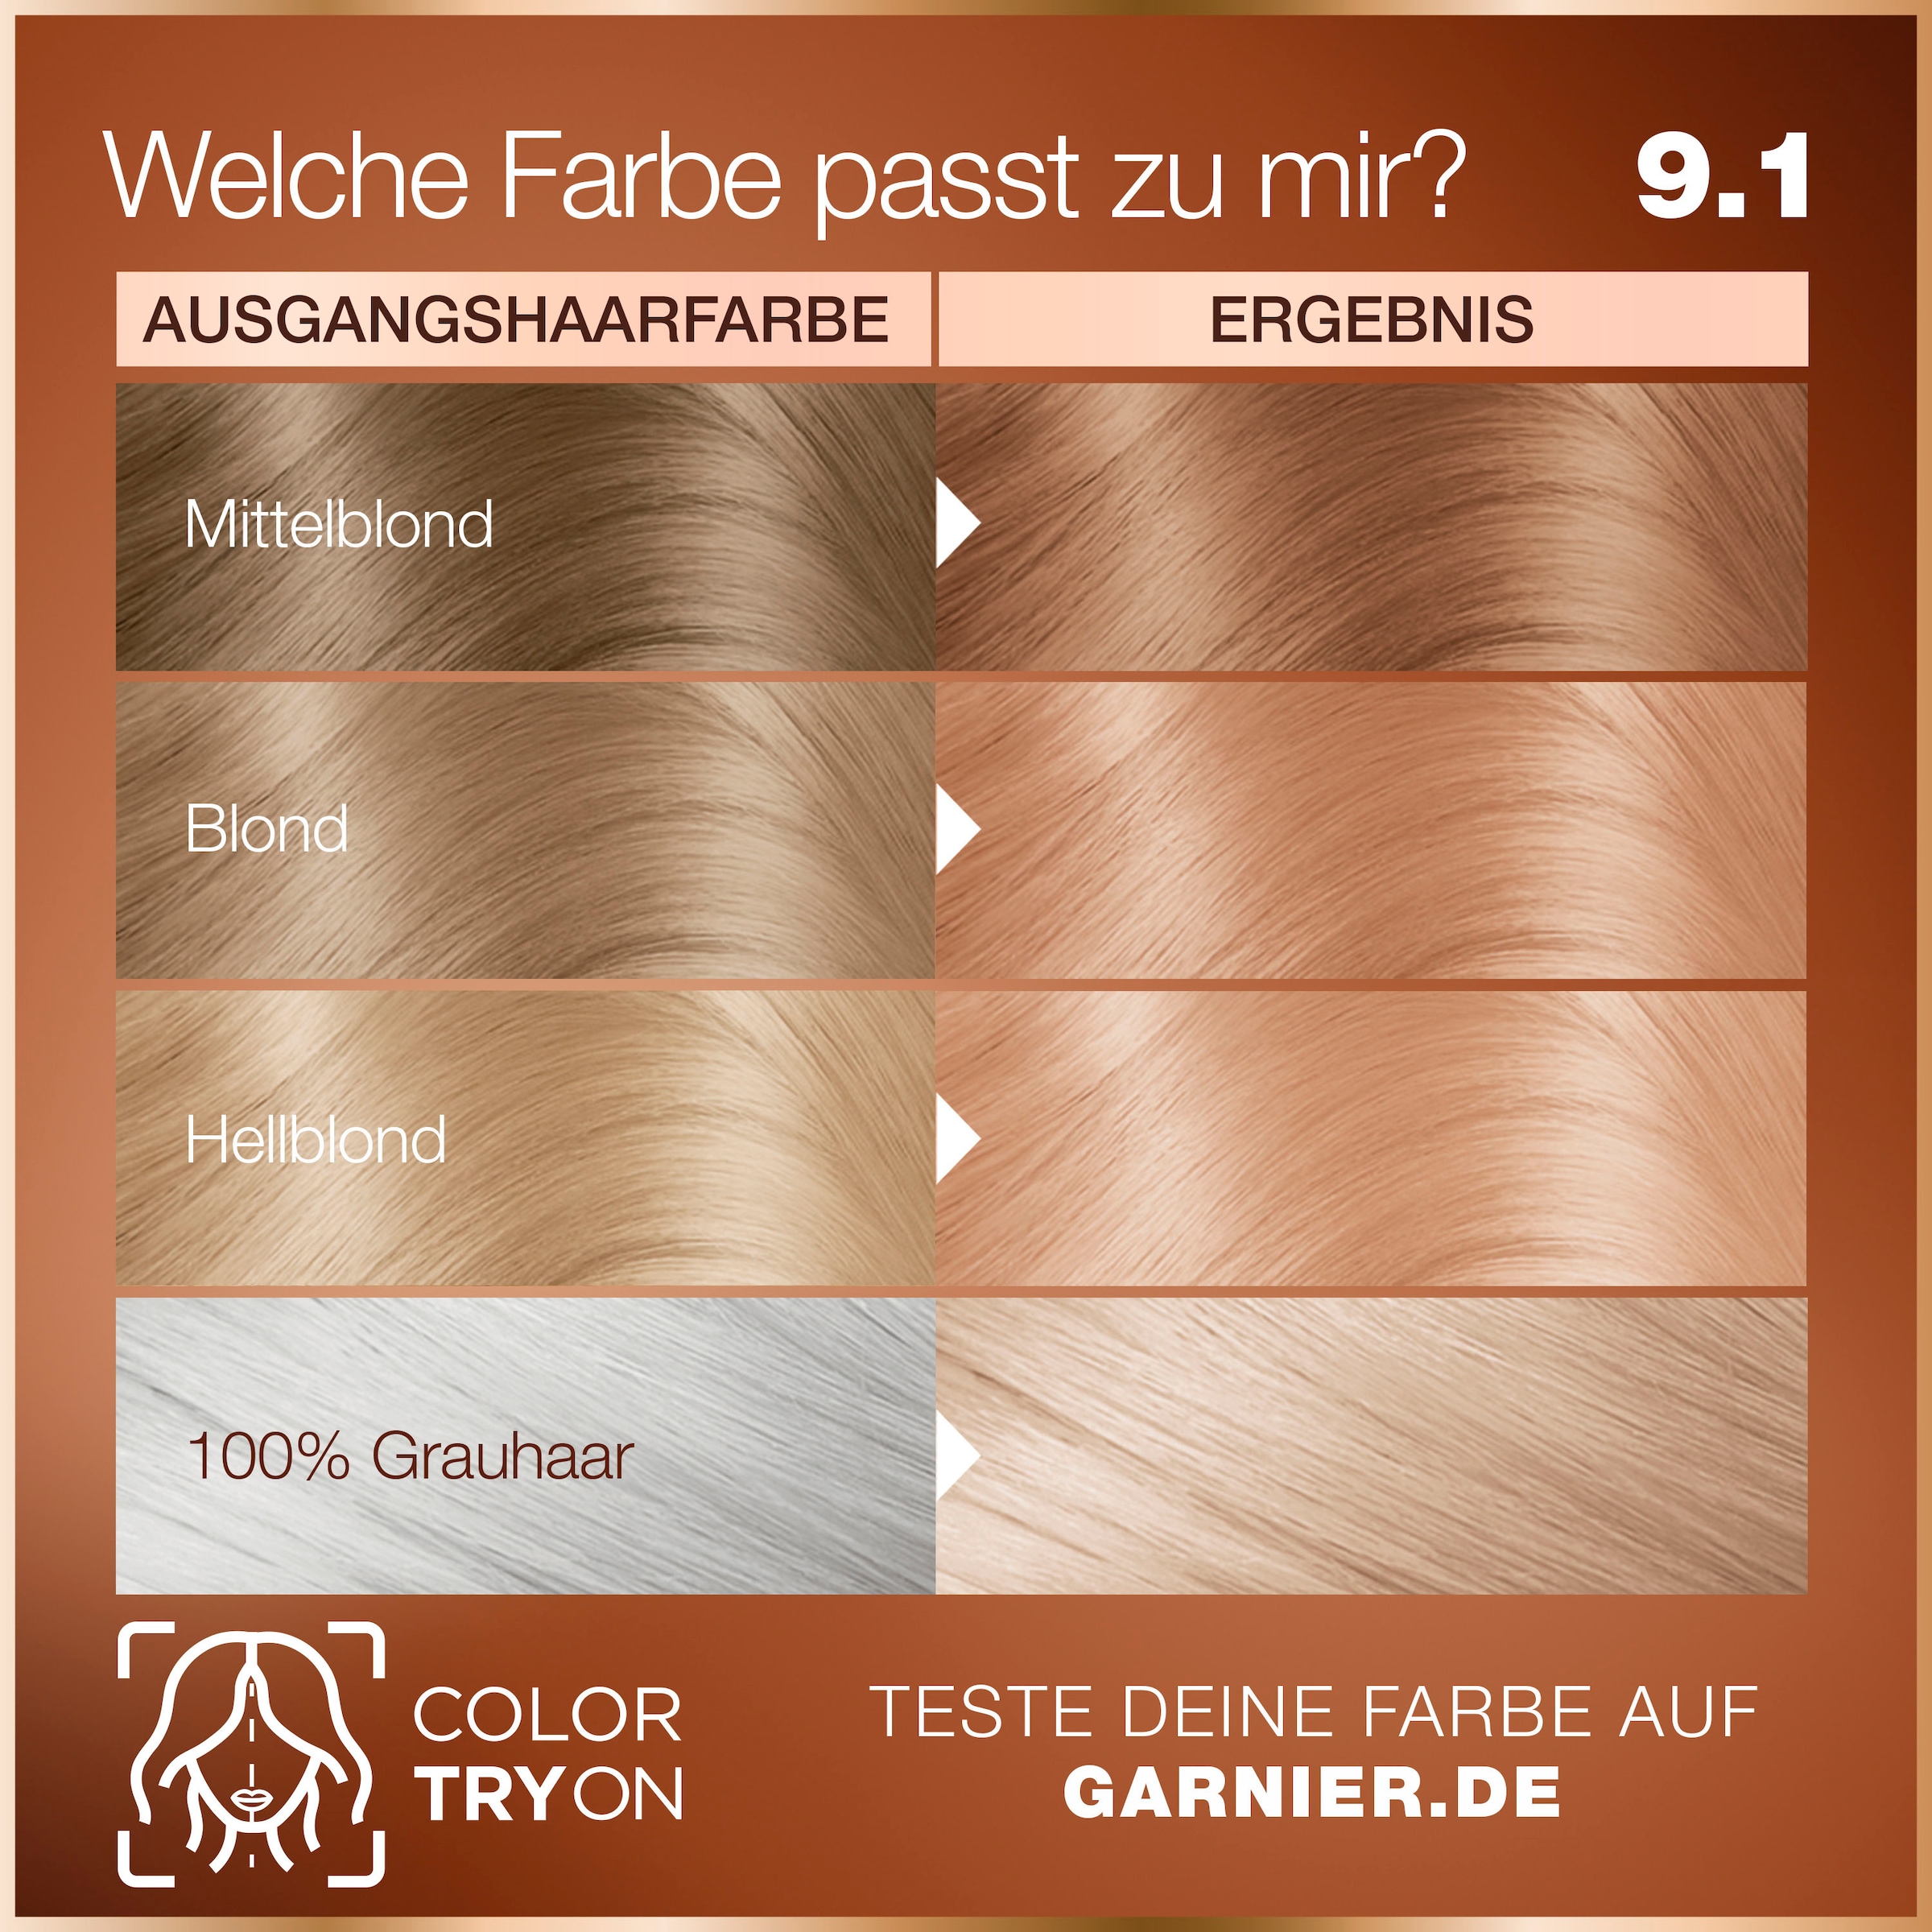 GARNIER Coloration Haarfarbe« Dauerhafte GOOD bei OTTOversand »Garnier